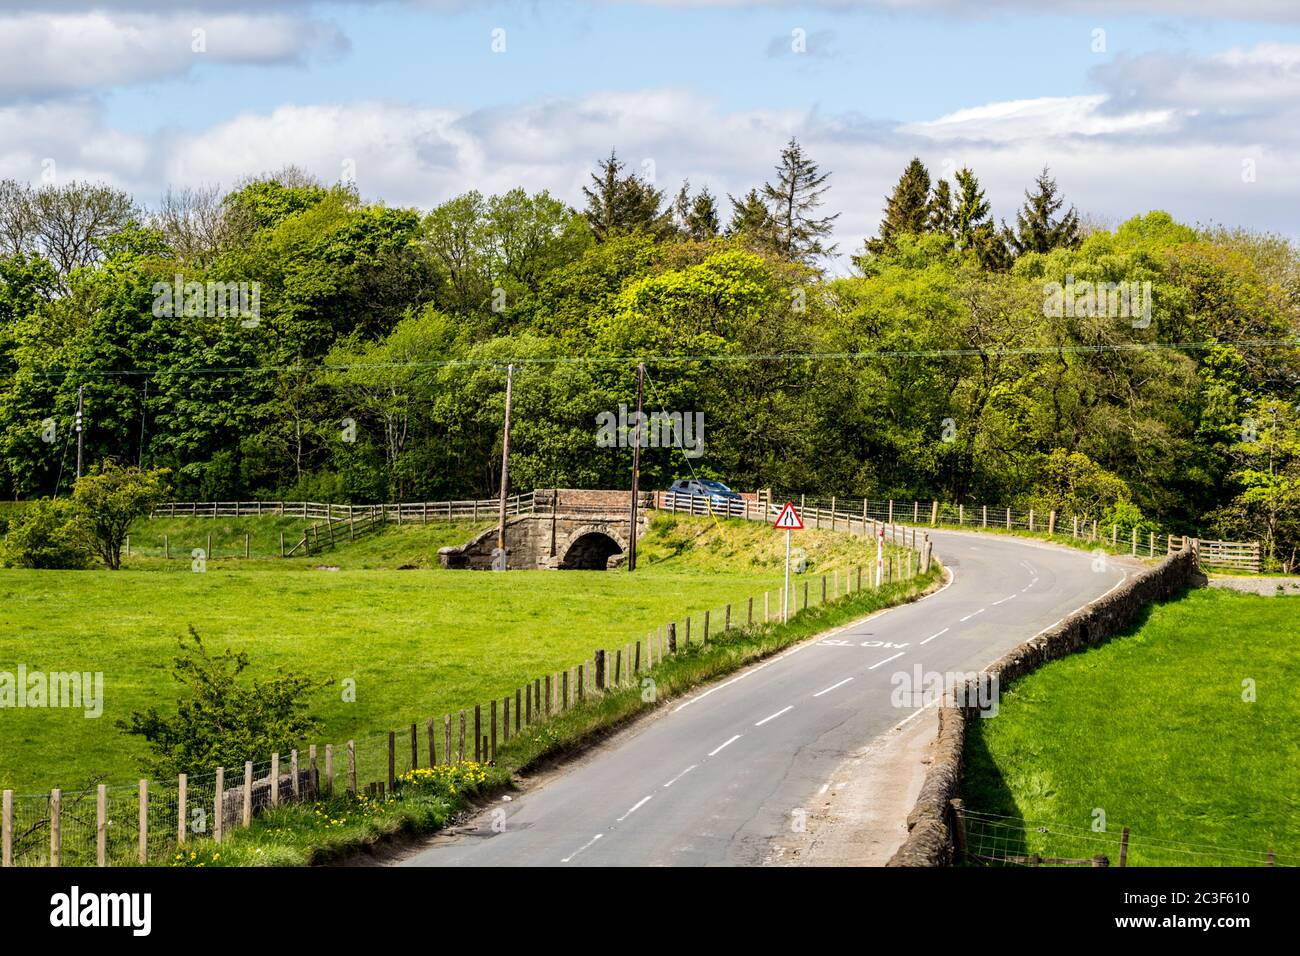 A road in Glen Mavis, North Lanarkshire in Scotland, UK Stock Photo